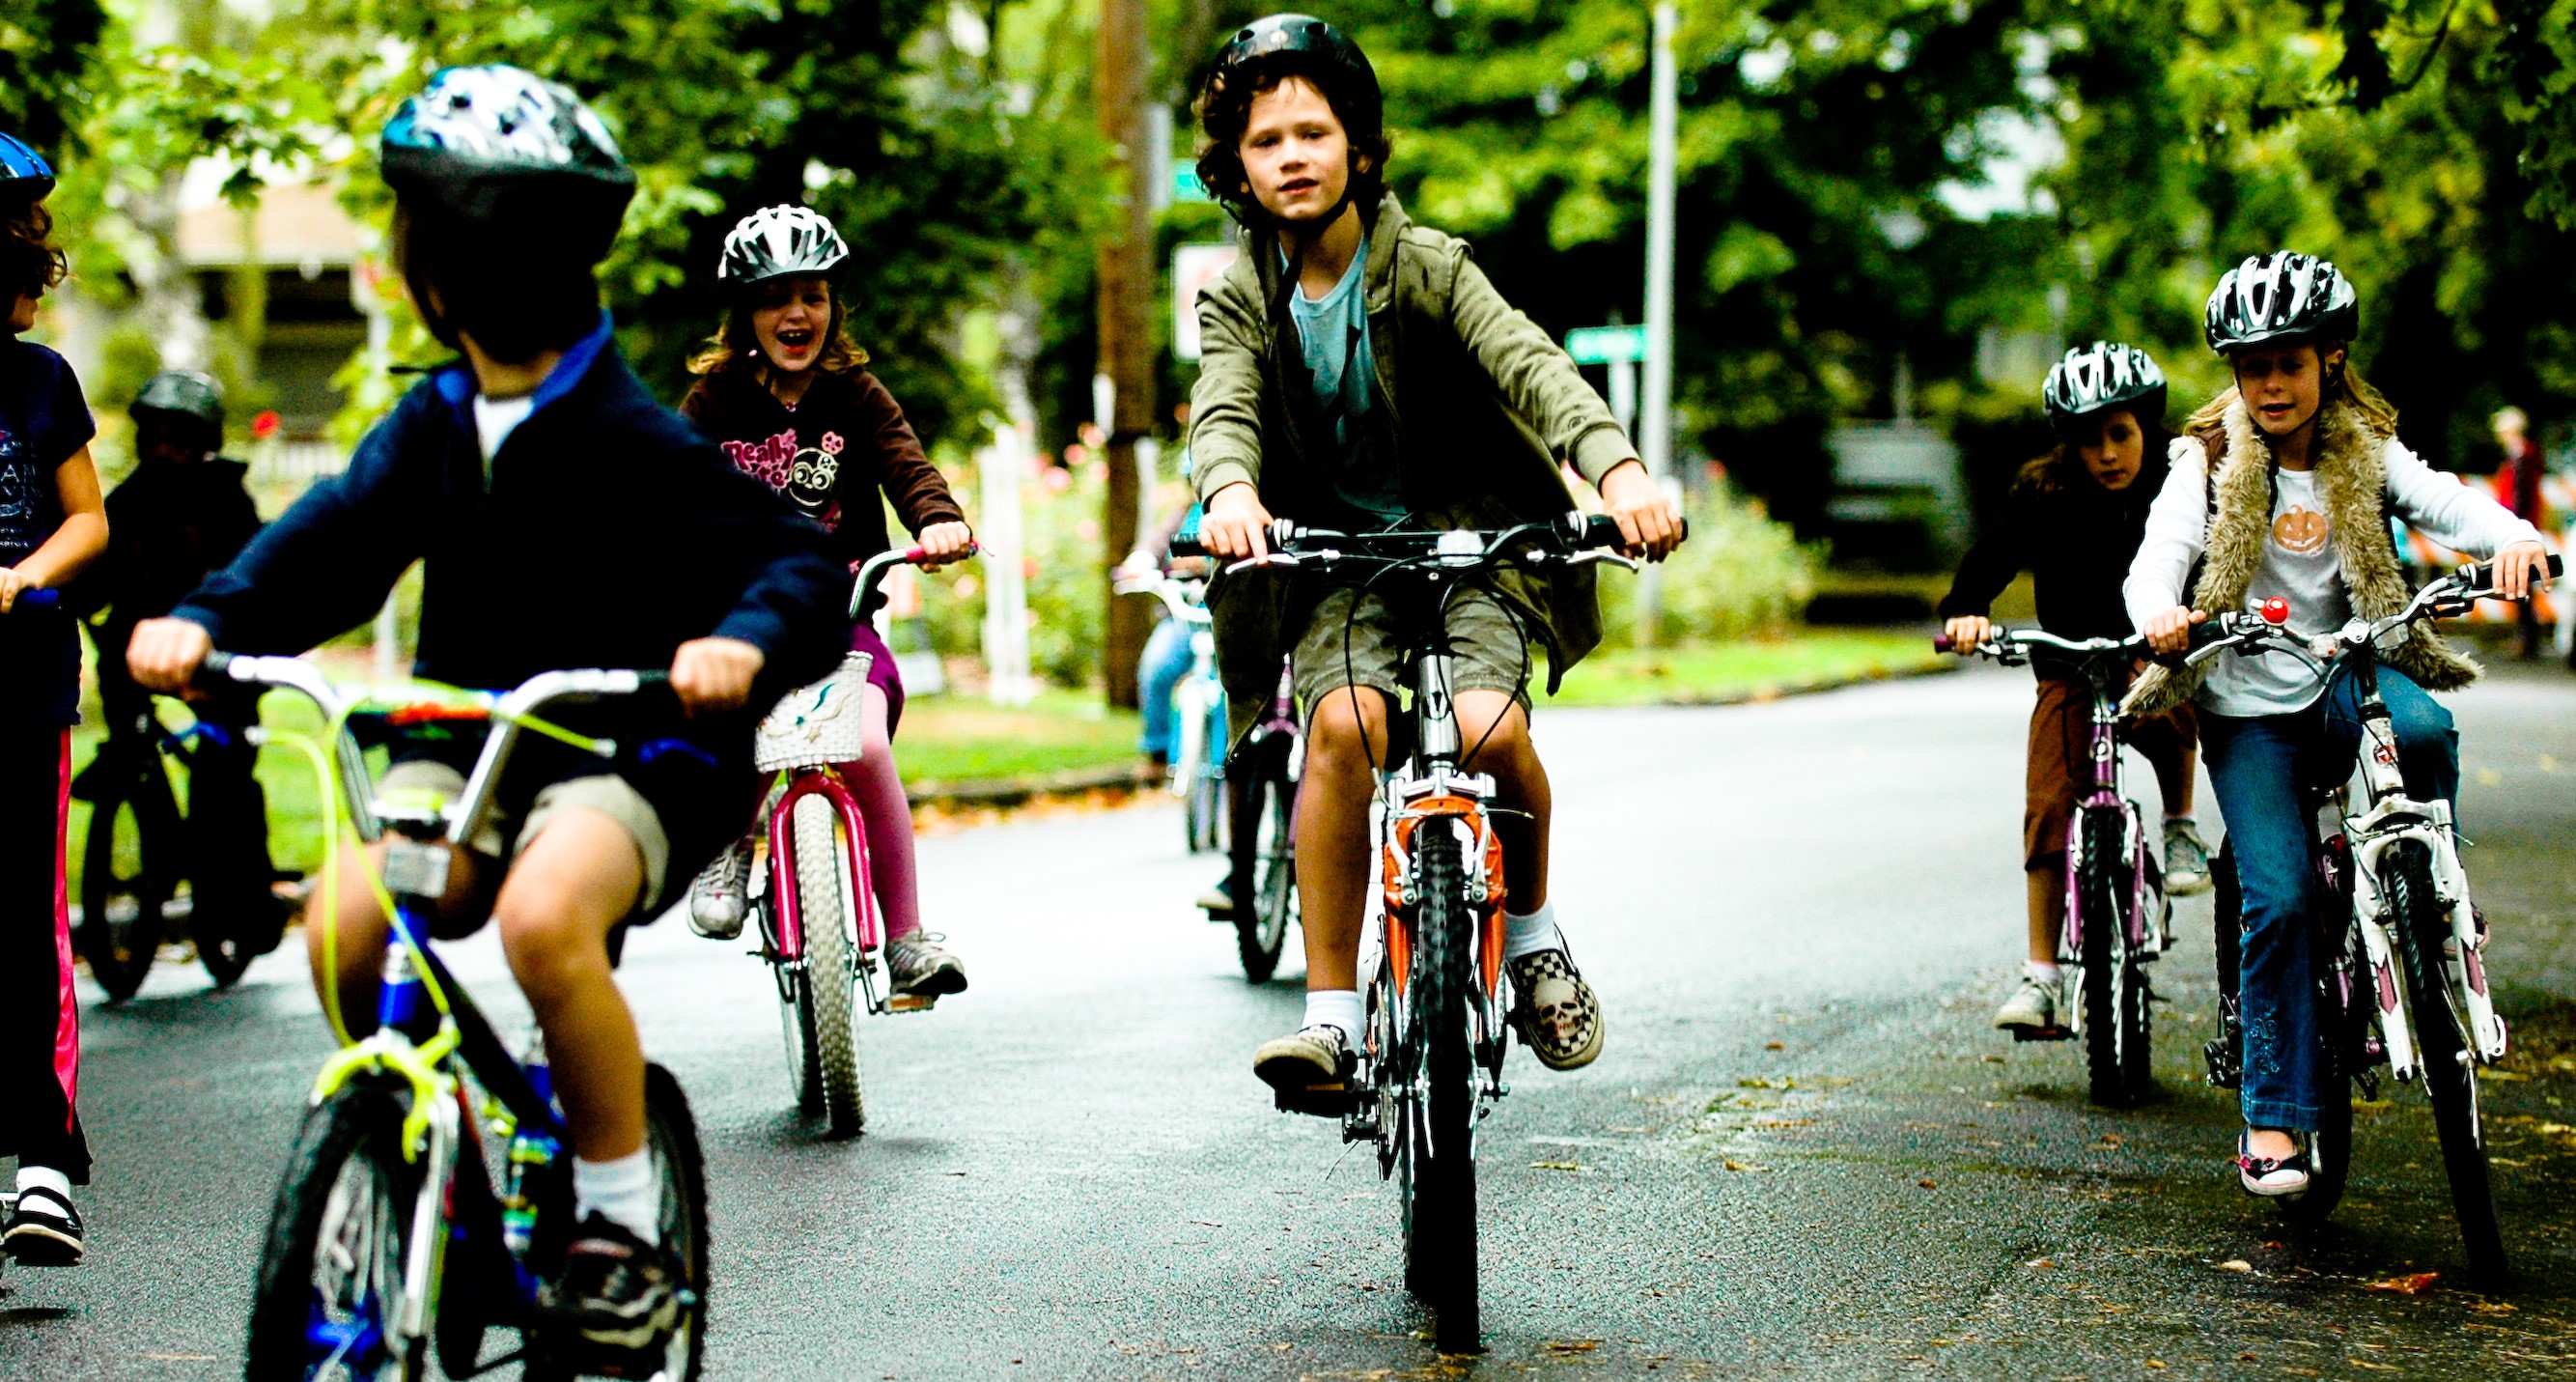 Children on bikes